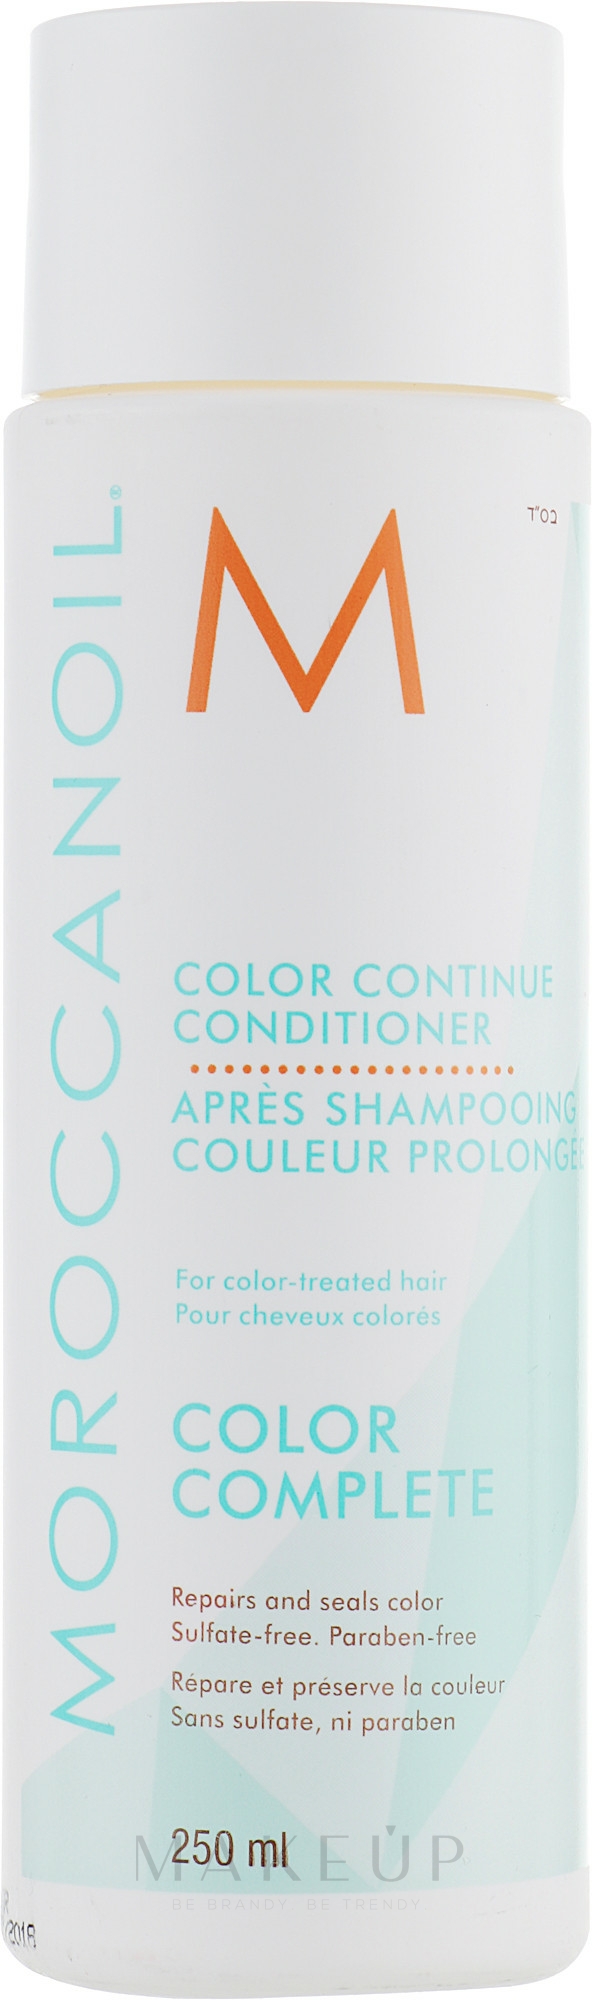 Conditioner für gefärbtes Haar mit Arganöl - Moroccanoil Color Continue Conditioner — Foto 250 ml